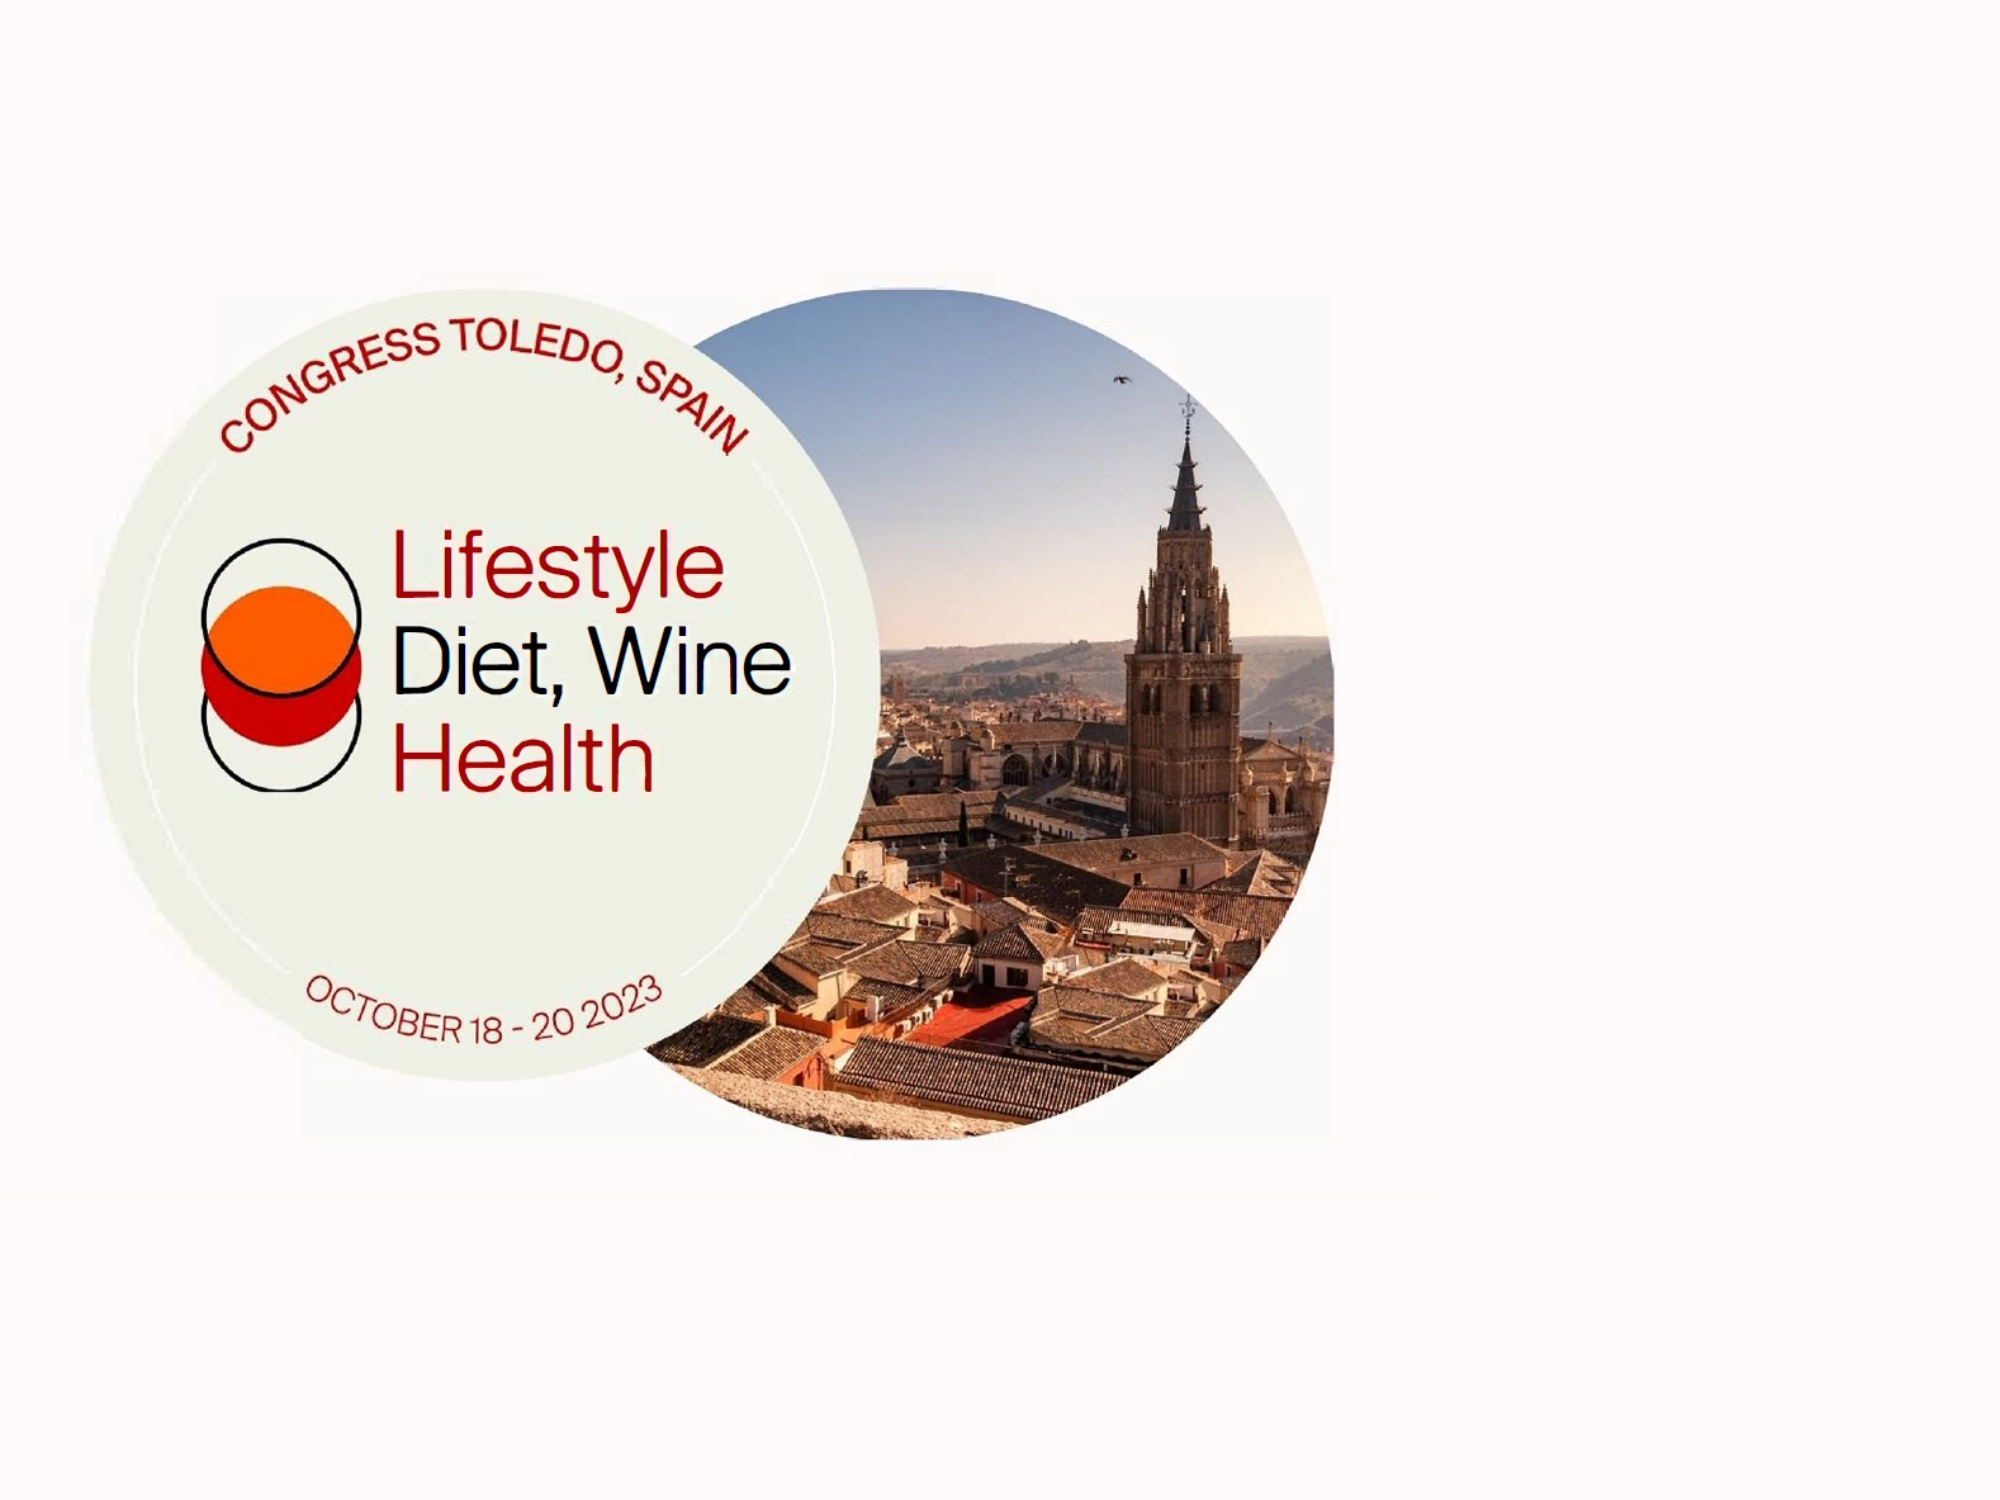 Congress ‘Lifestyle, Diet, Wine & Health’